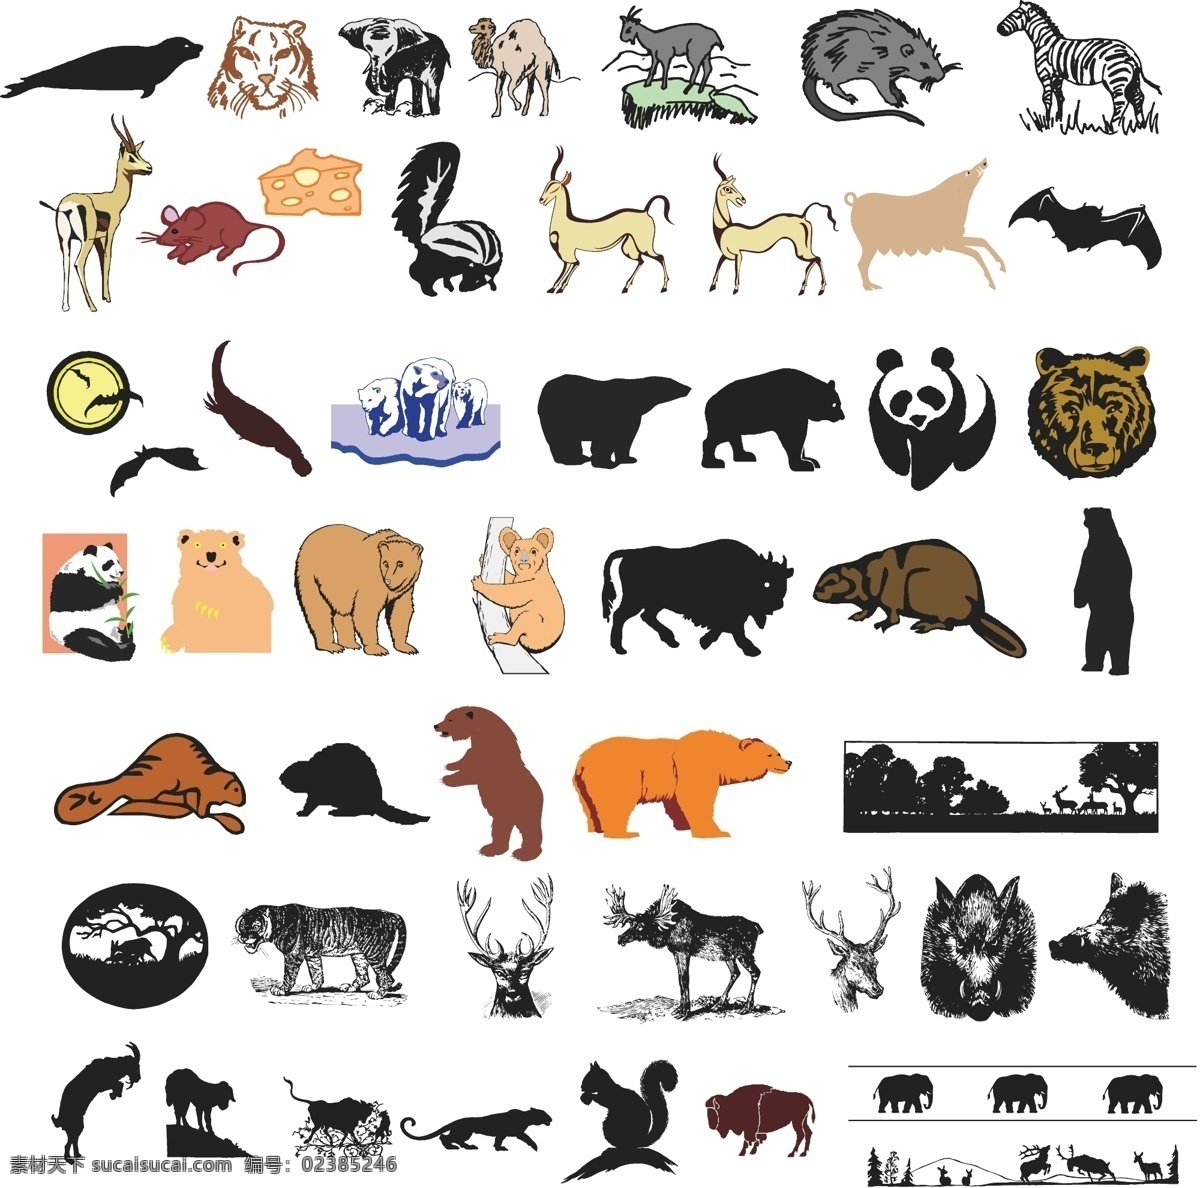 熊猫 狗熊 麋鹿 森林 动物 老虎 松鼠 北极熊 剪影 图标 标志 标牌 标识 欧式 动物图形元素 野生动物 生物世界 矢量